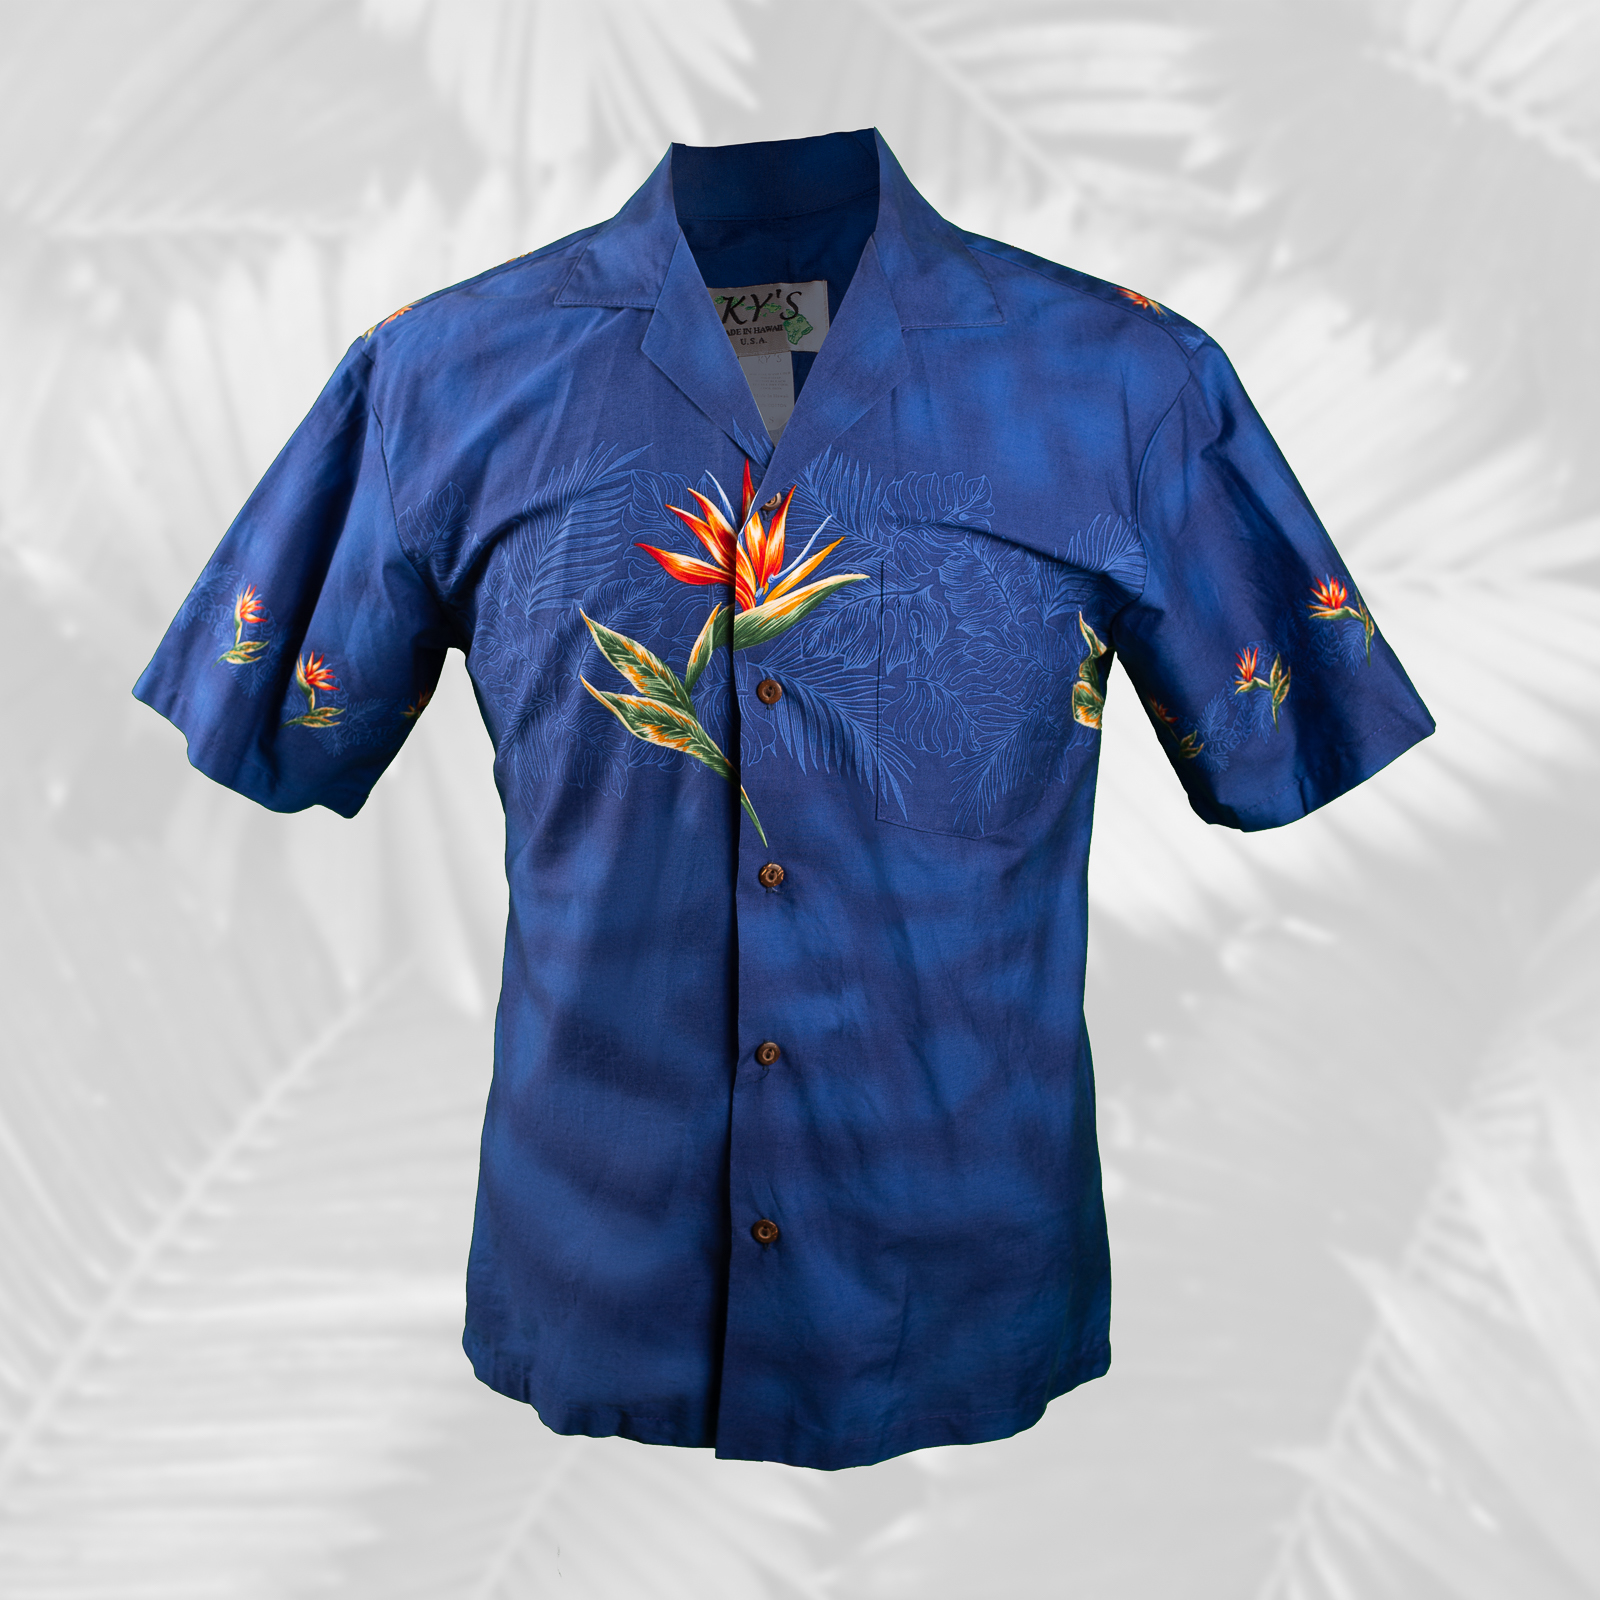 New Bird of Paradise Men's Aloha Shirt, Made in Hawaii Pink / 5XL